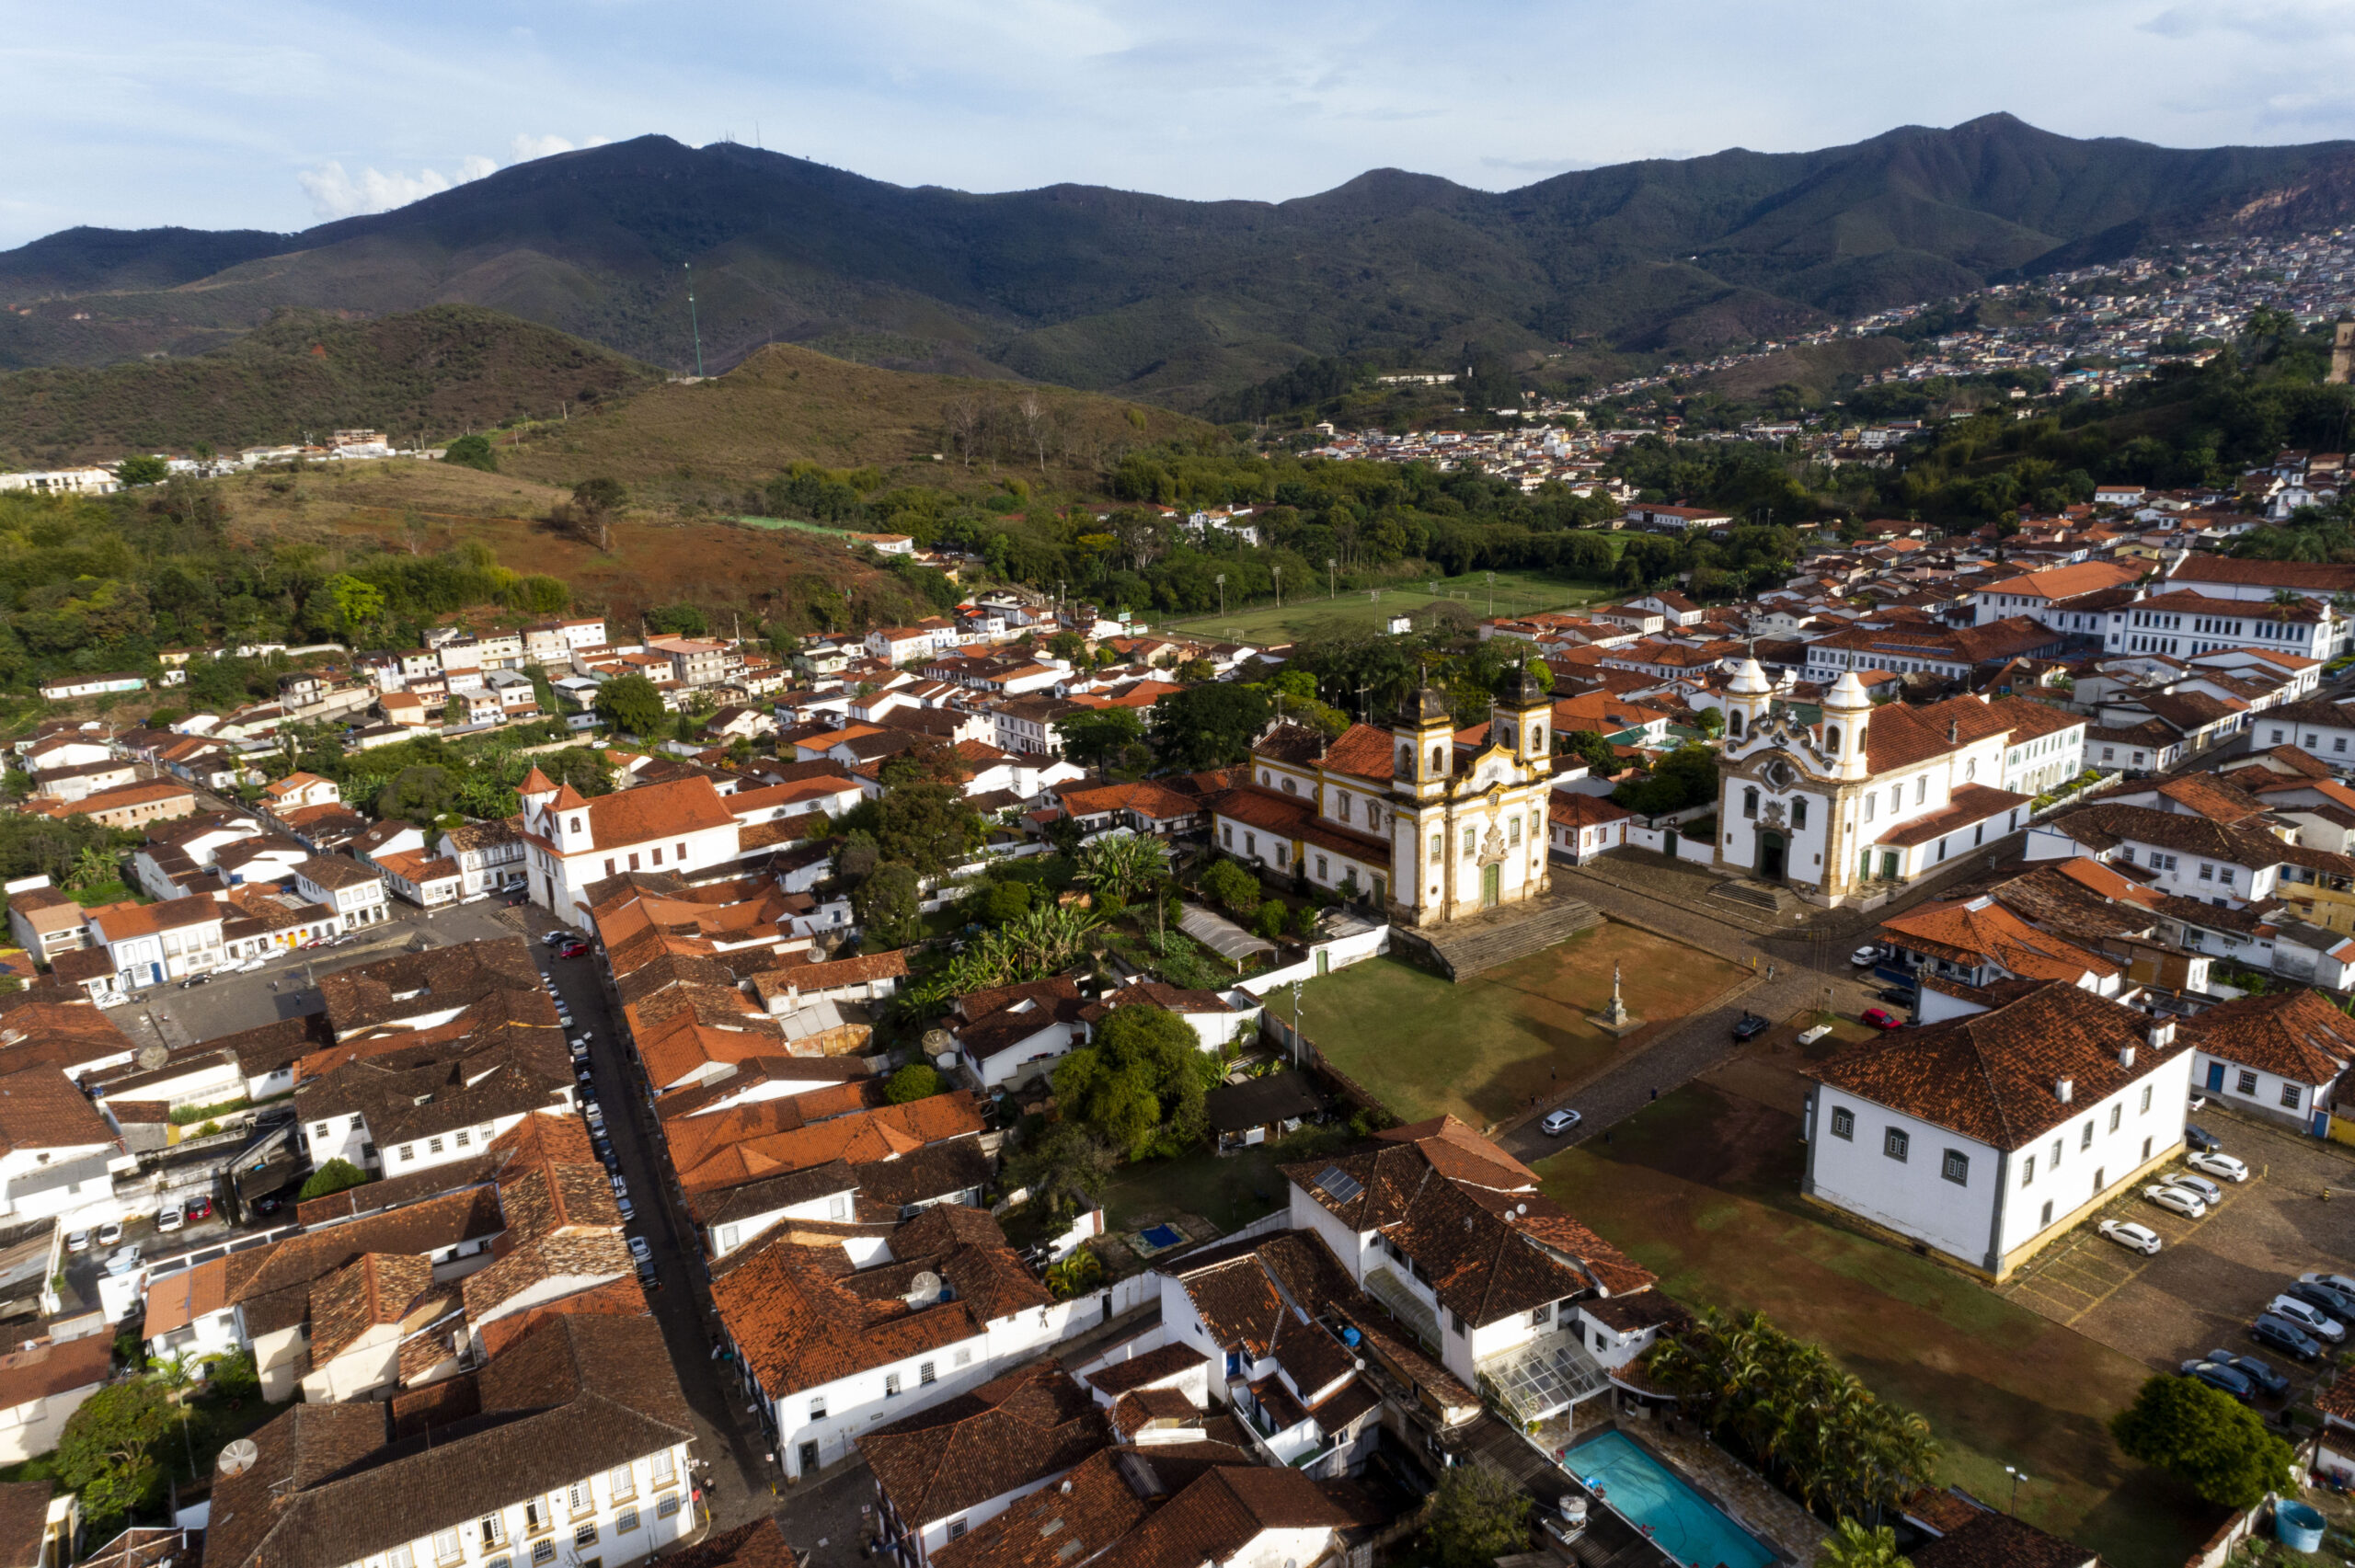 Vista aérea do centro histórico de Mariana - Imagem: Bruno Correa / NITRO Historias Visuais